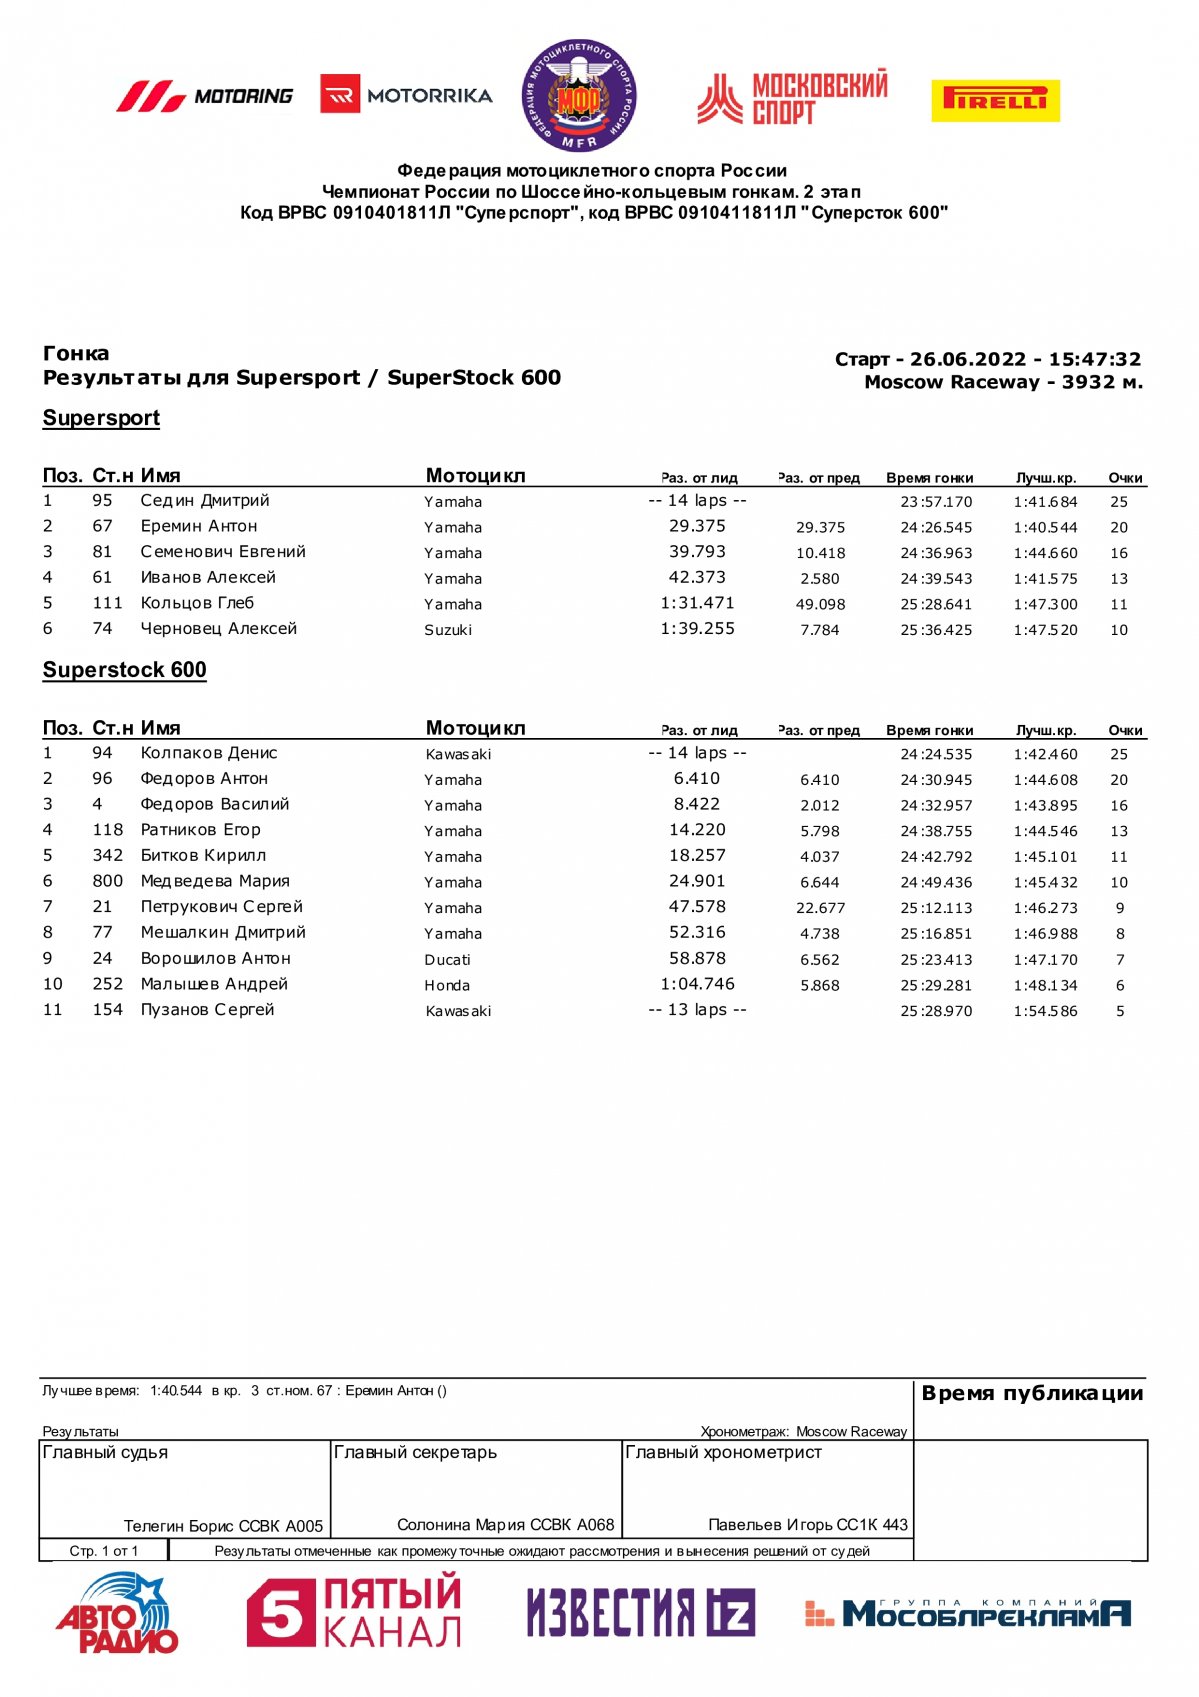 Результаты 2 этапа Чемпионата России класс Supersport/Superstock-600, Moscow Raceway (26/06/2022)